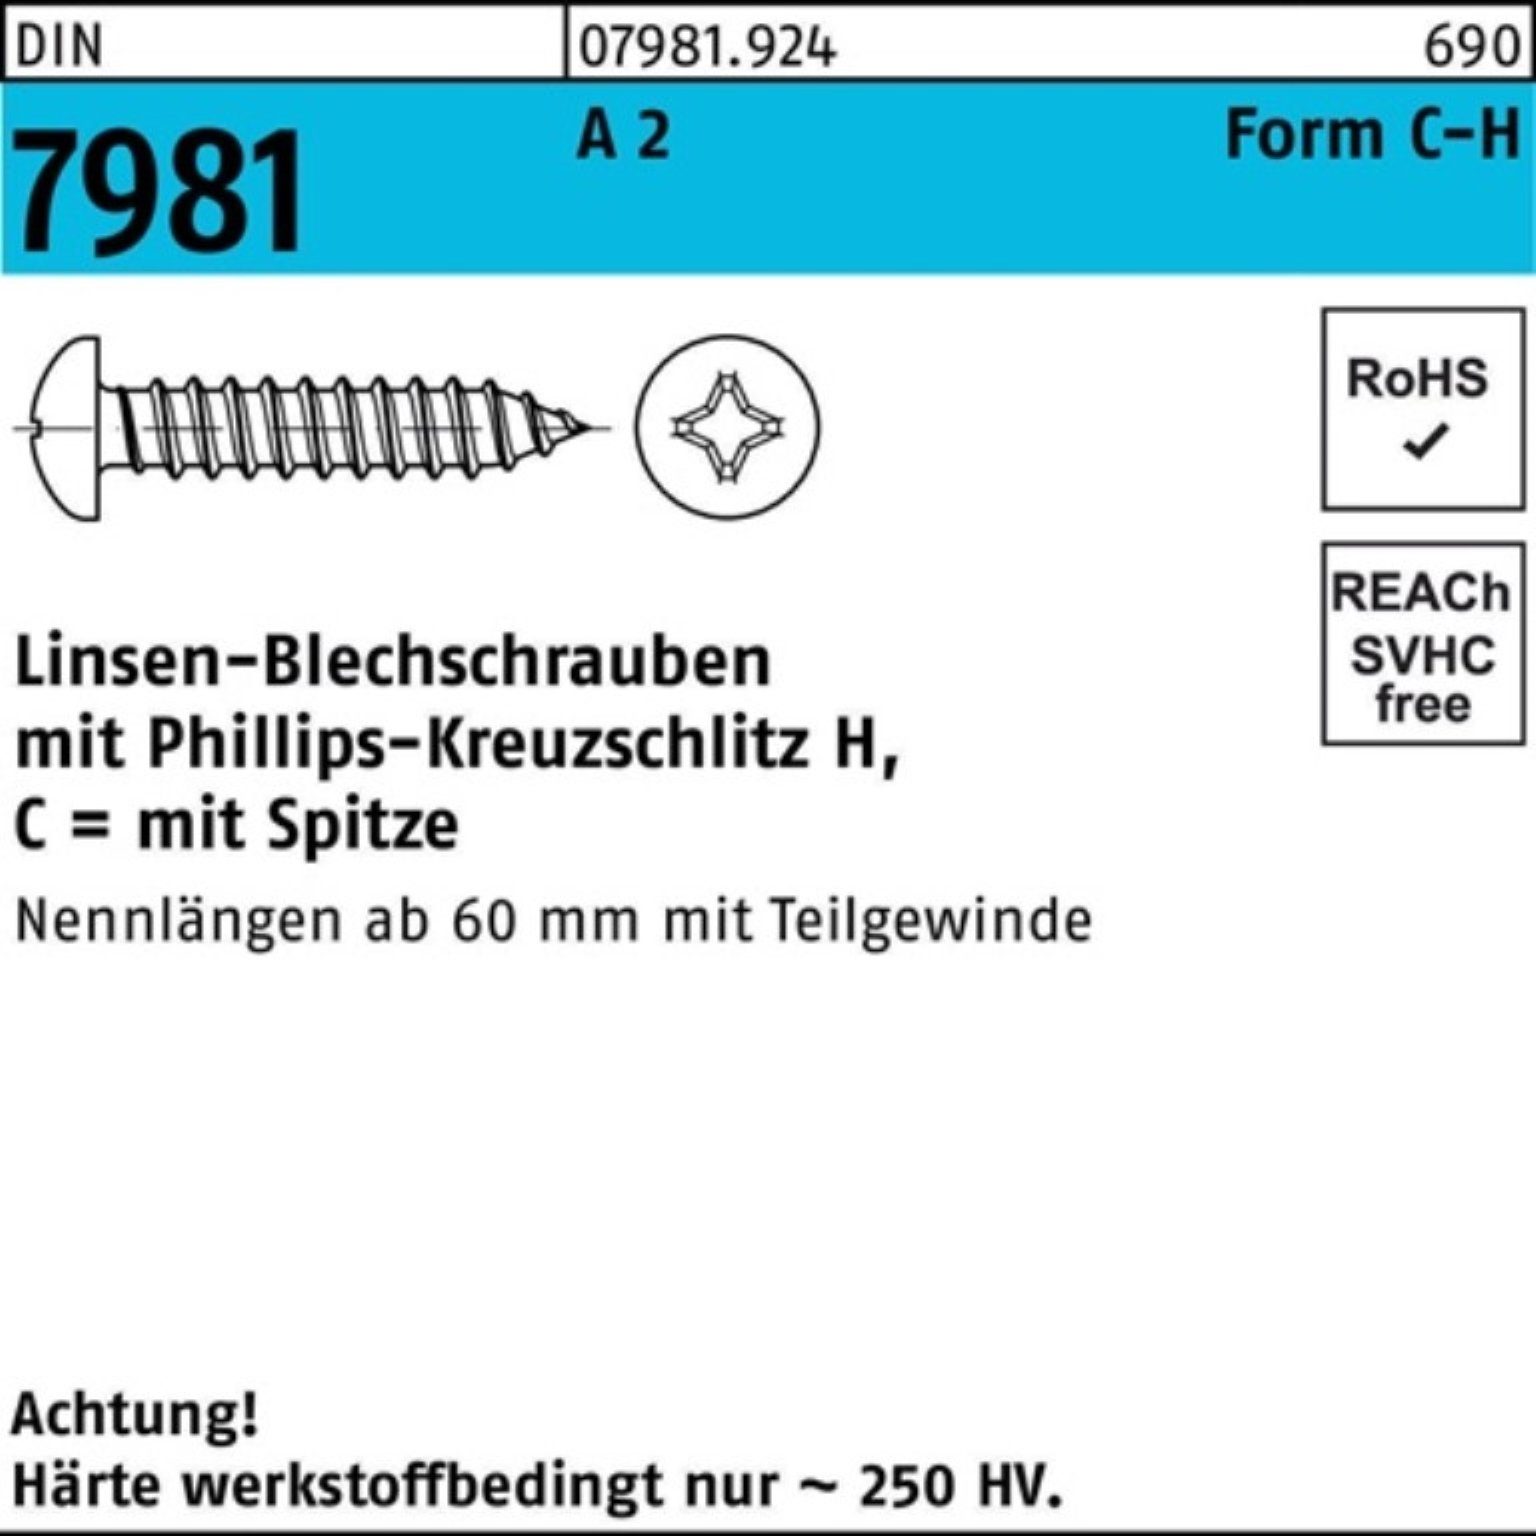 A C Blechschraube 2 Reyher Pack 7981 Stück Blechschraube D 100 16-H 100er 3,5x DIN PH LIKO